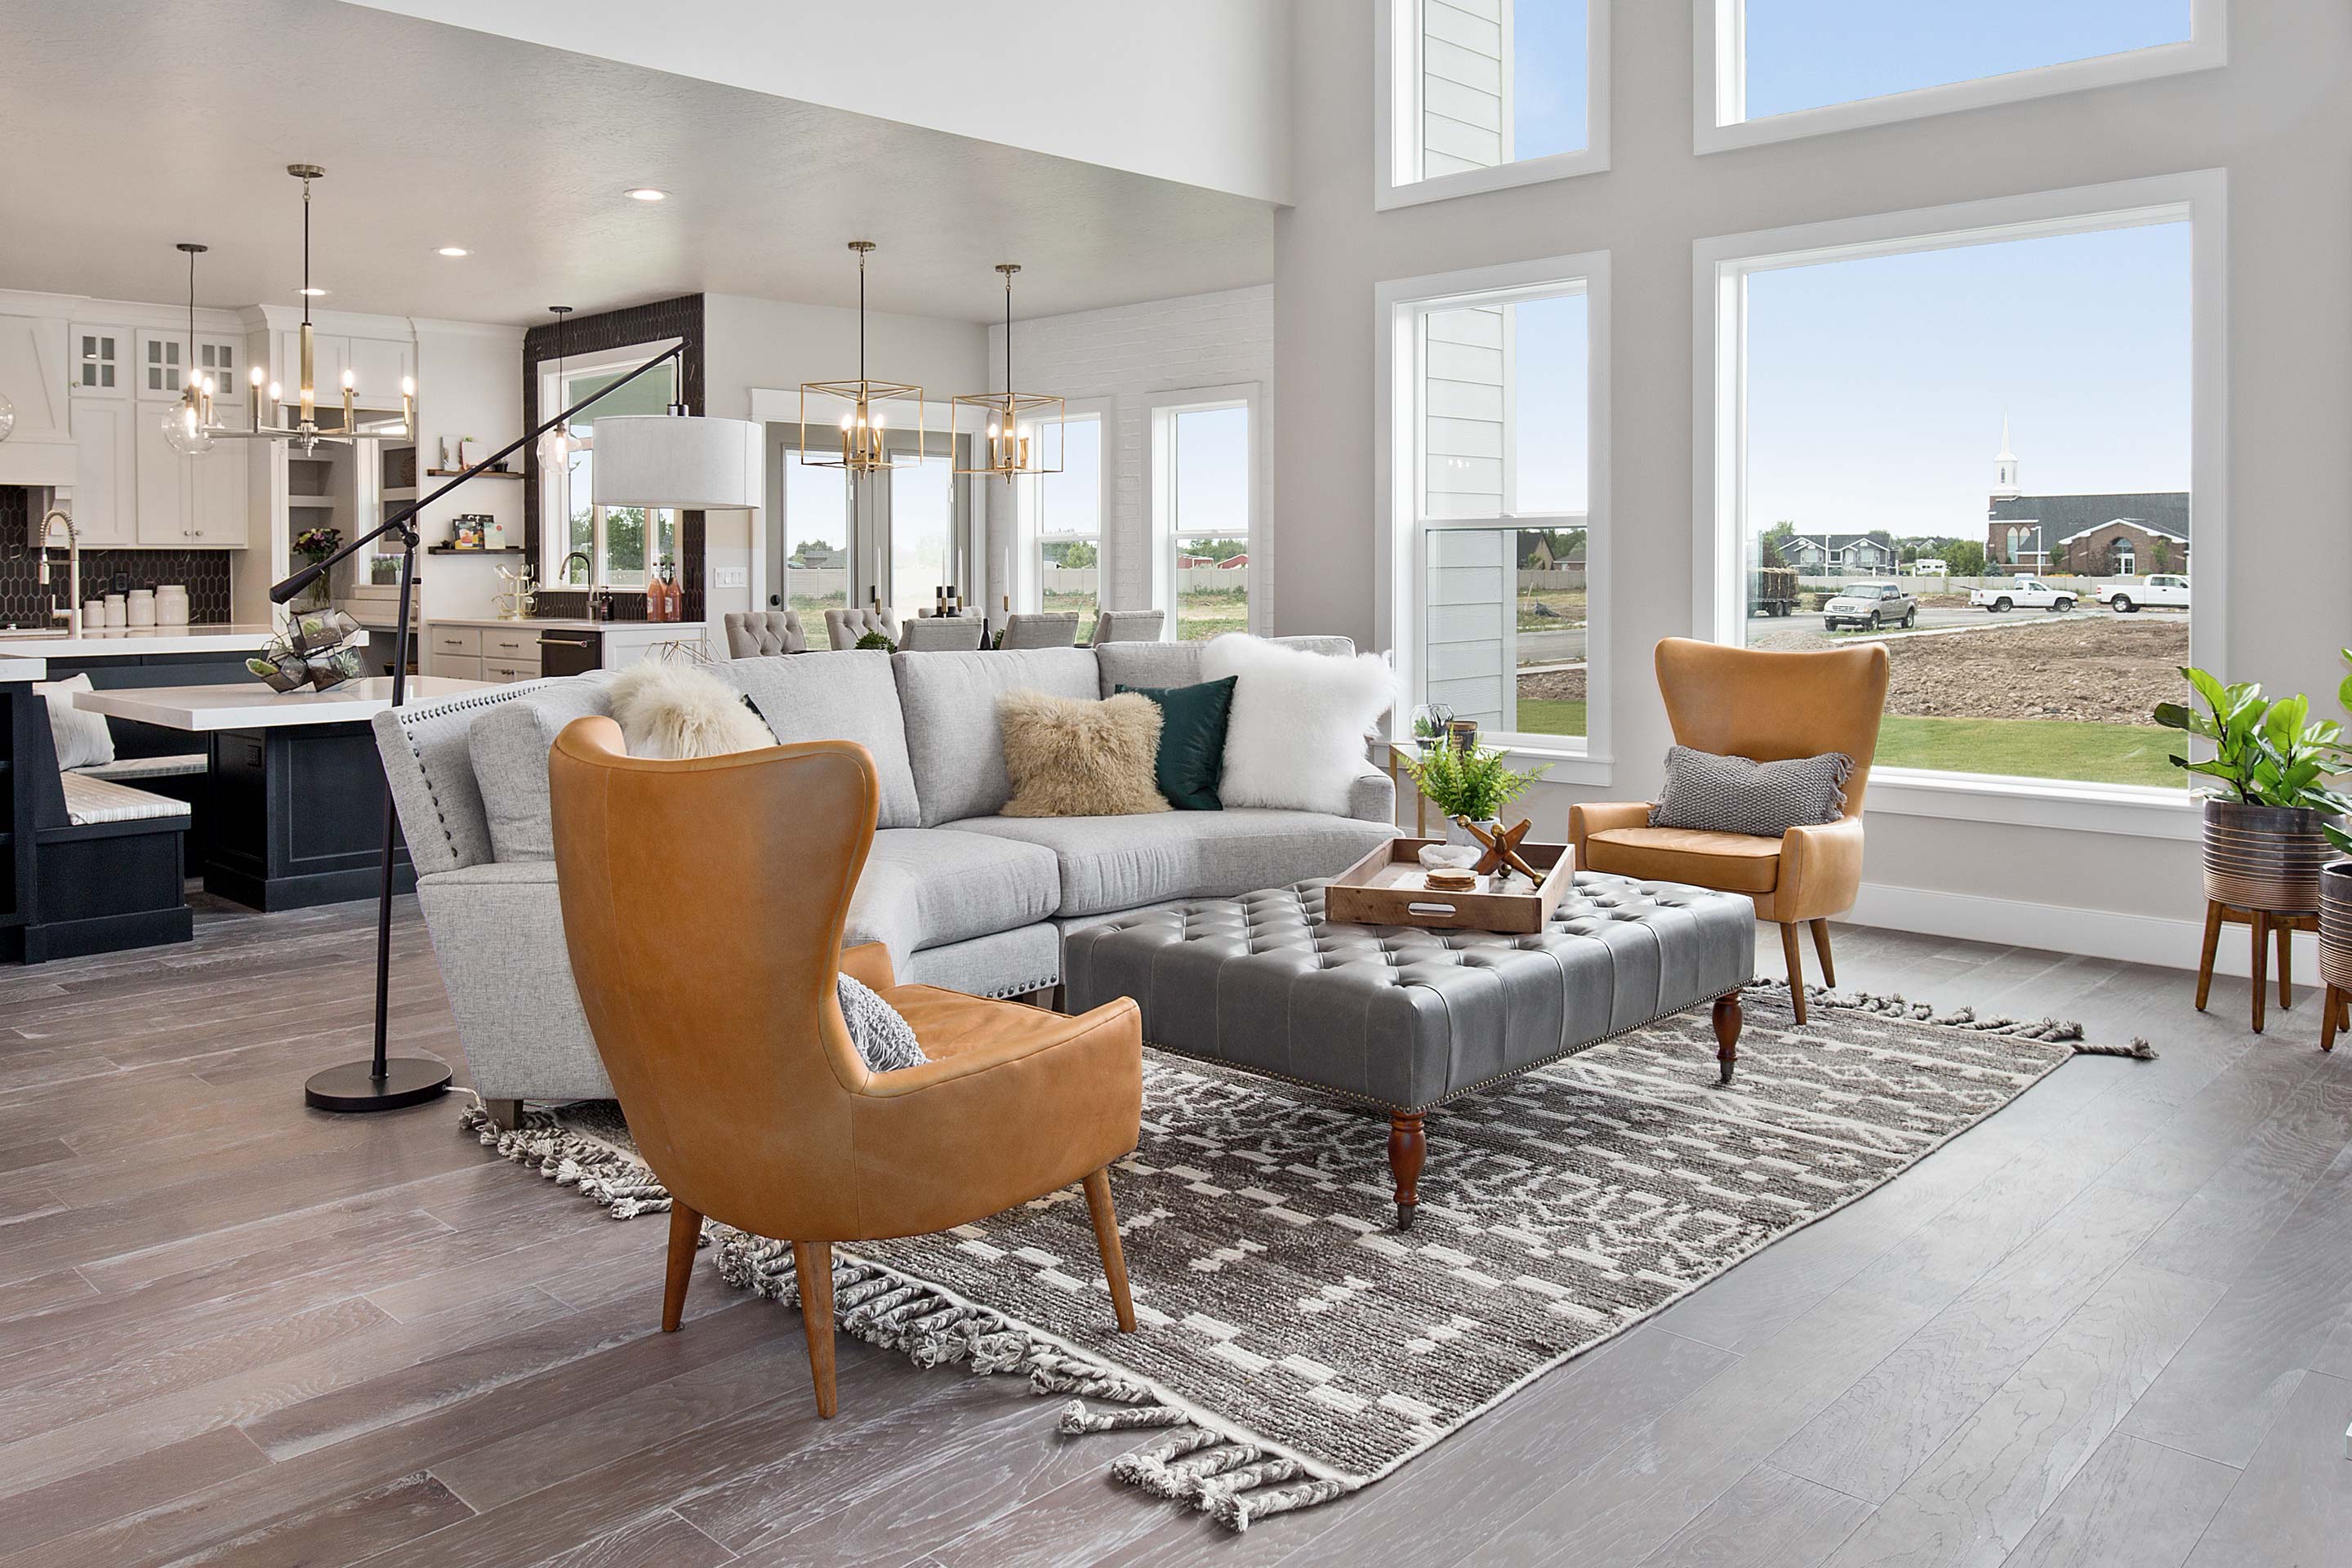 Nápady na obývací pokoj: 5 tipů pro uspořádání vašeho obývacího pokoje | Peníze